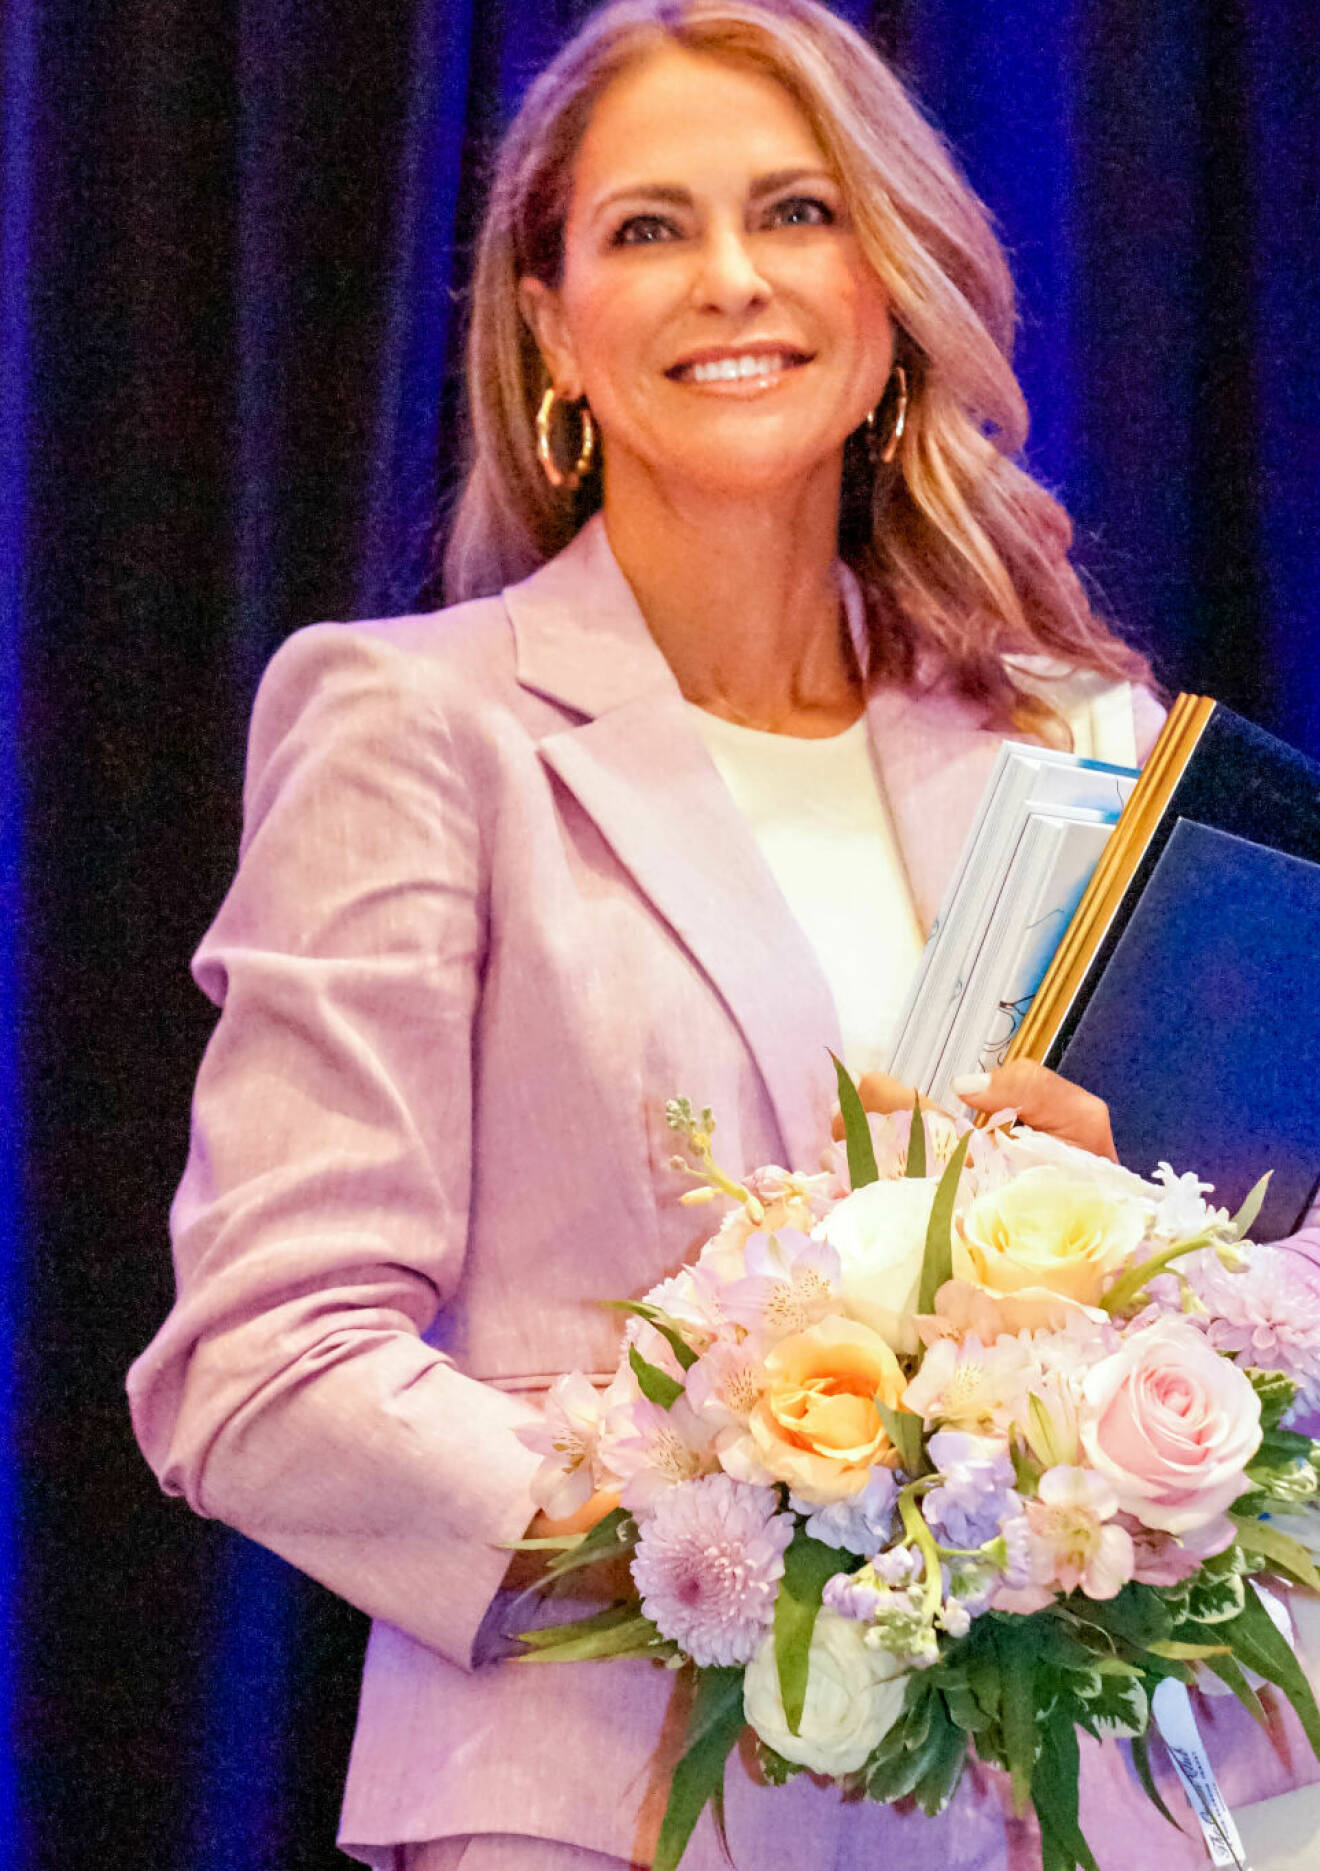 Prinsessan Madeleine när SWEA International hade årsmöte 2022